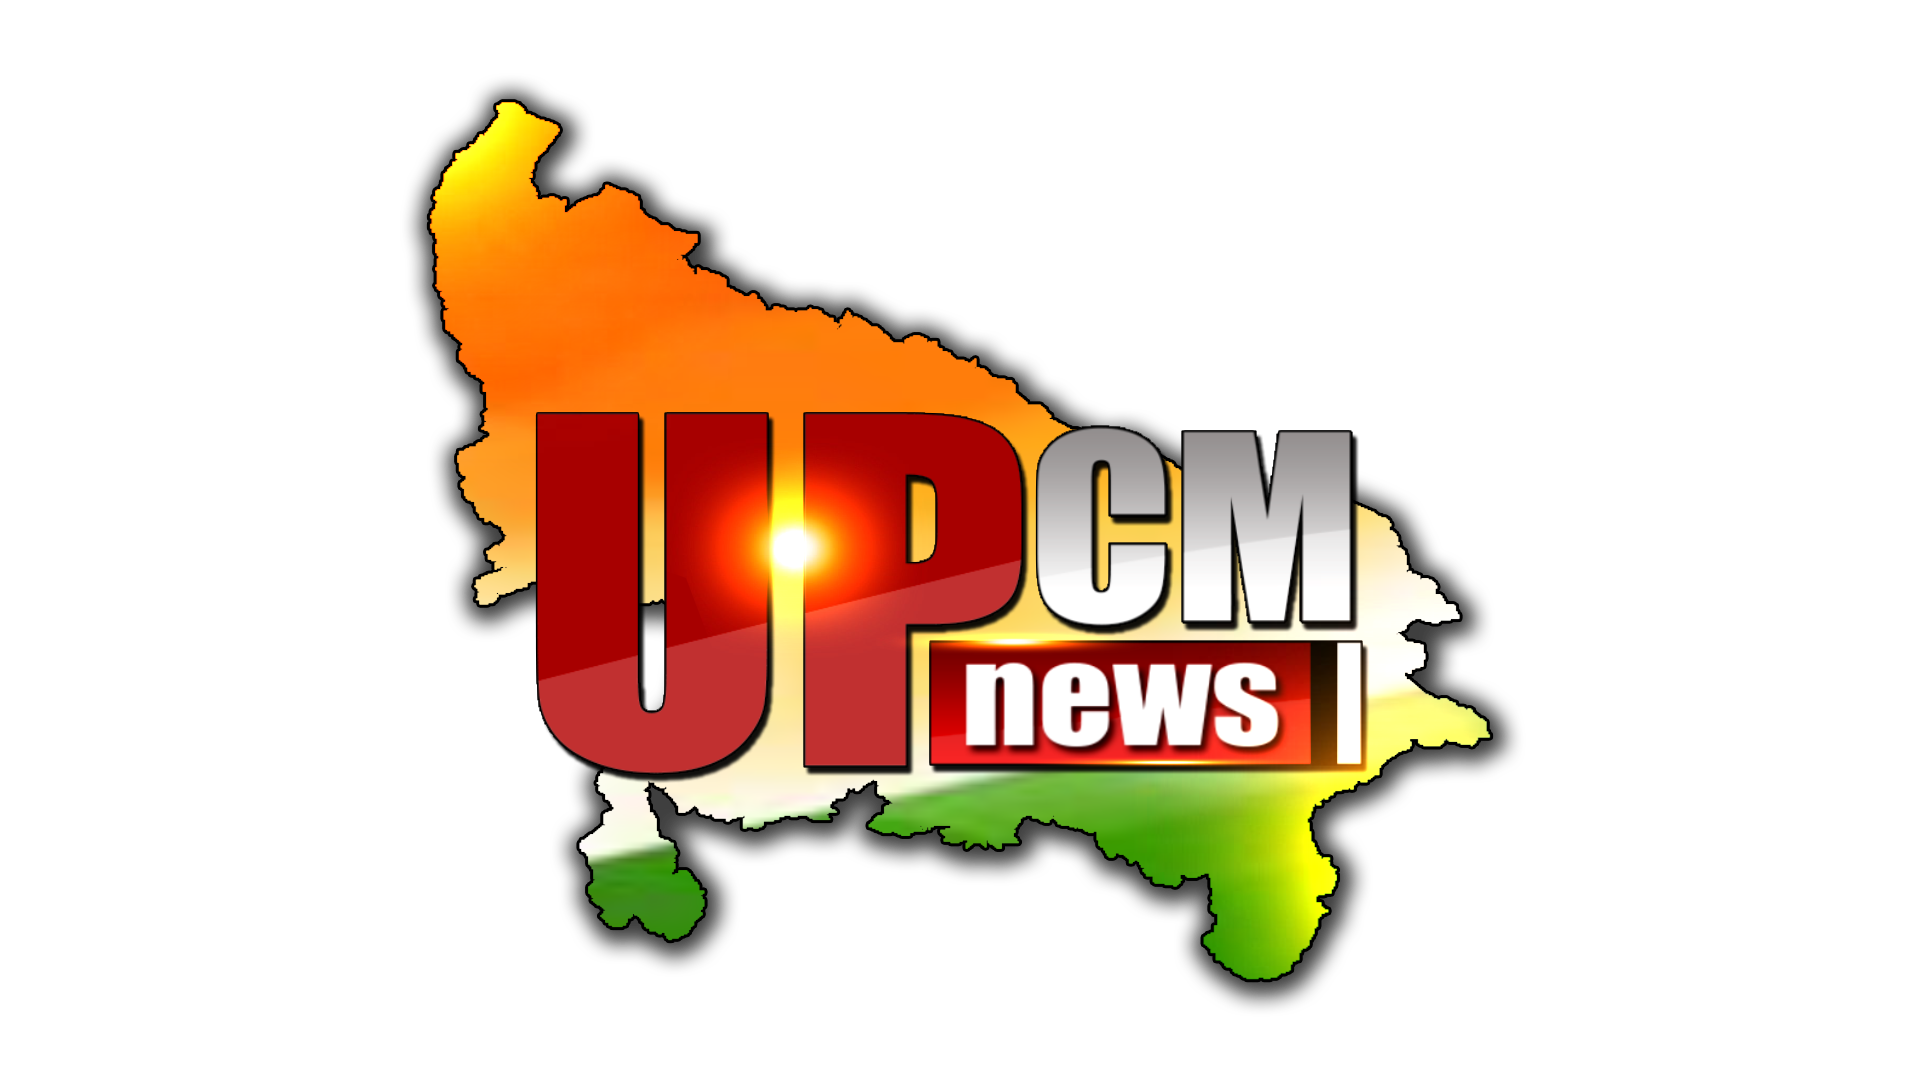 UPCM NEWS की तरफ से प्रदेशवासियों को होली की हार्दिक बधाई